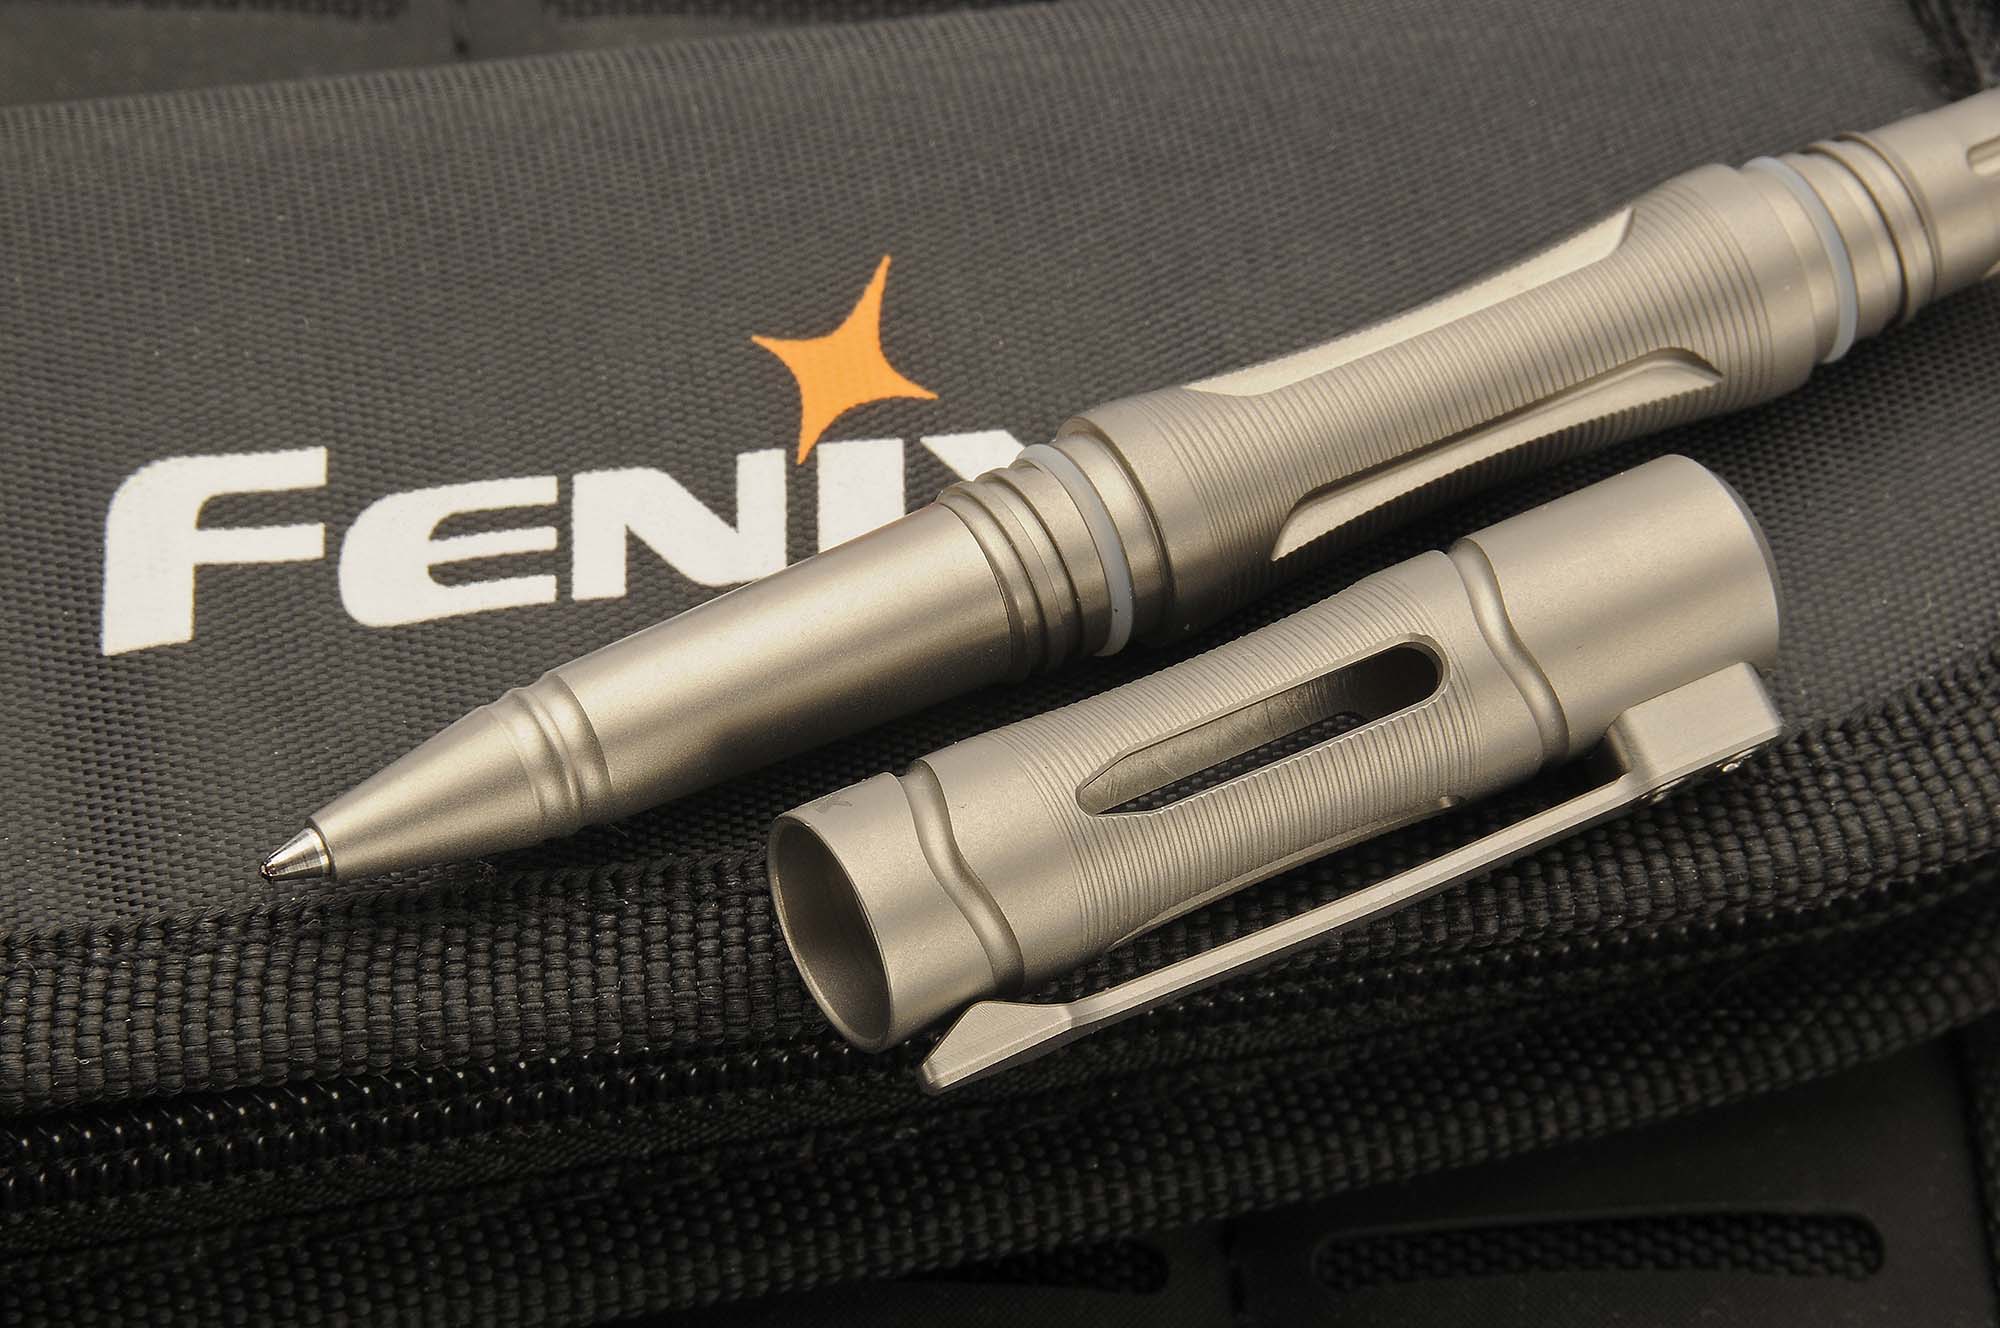 Fenix t5ti Tactical pen/táctica bolígrafo azul